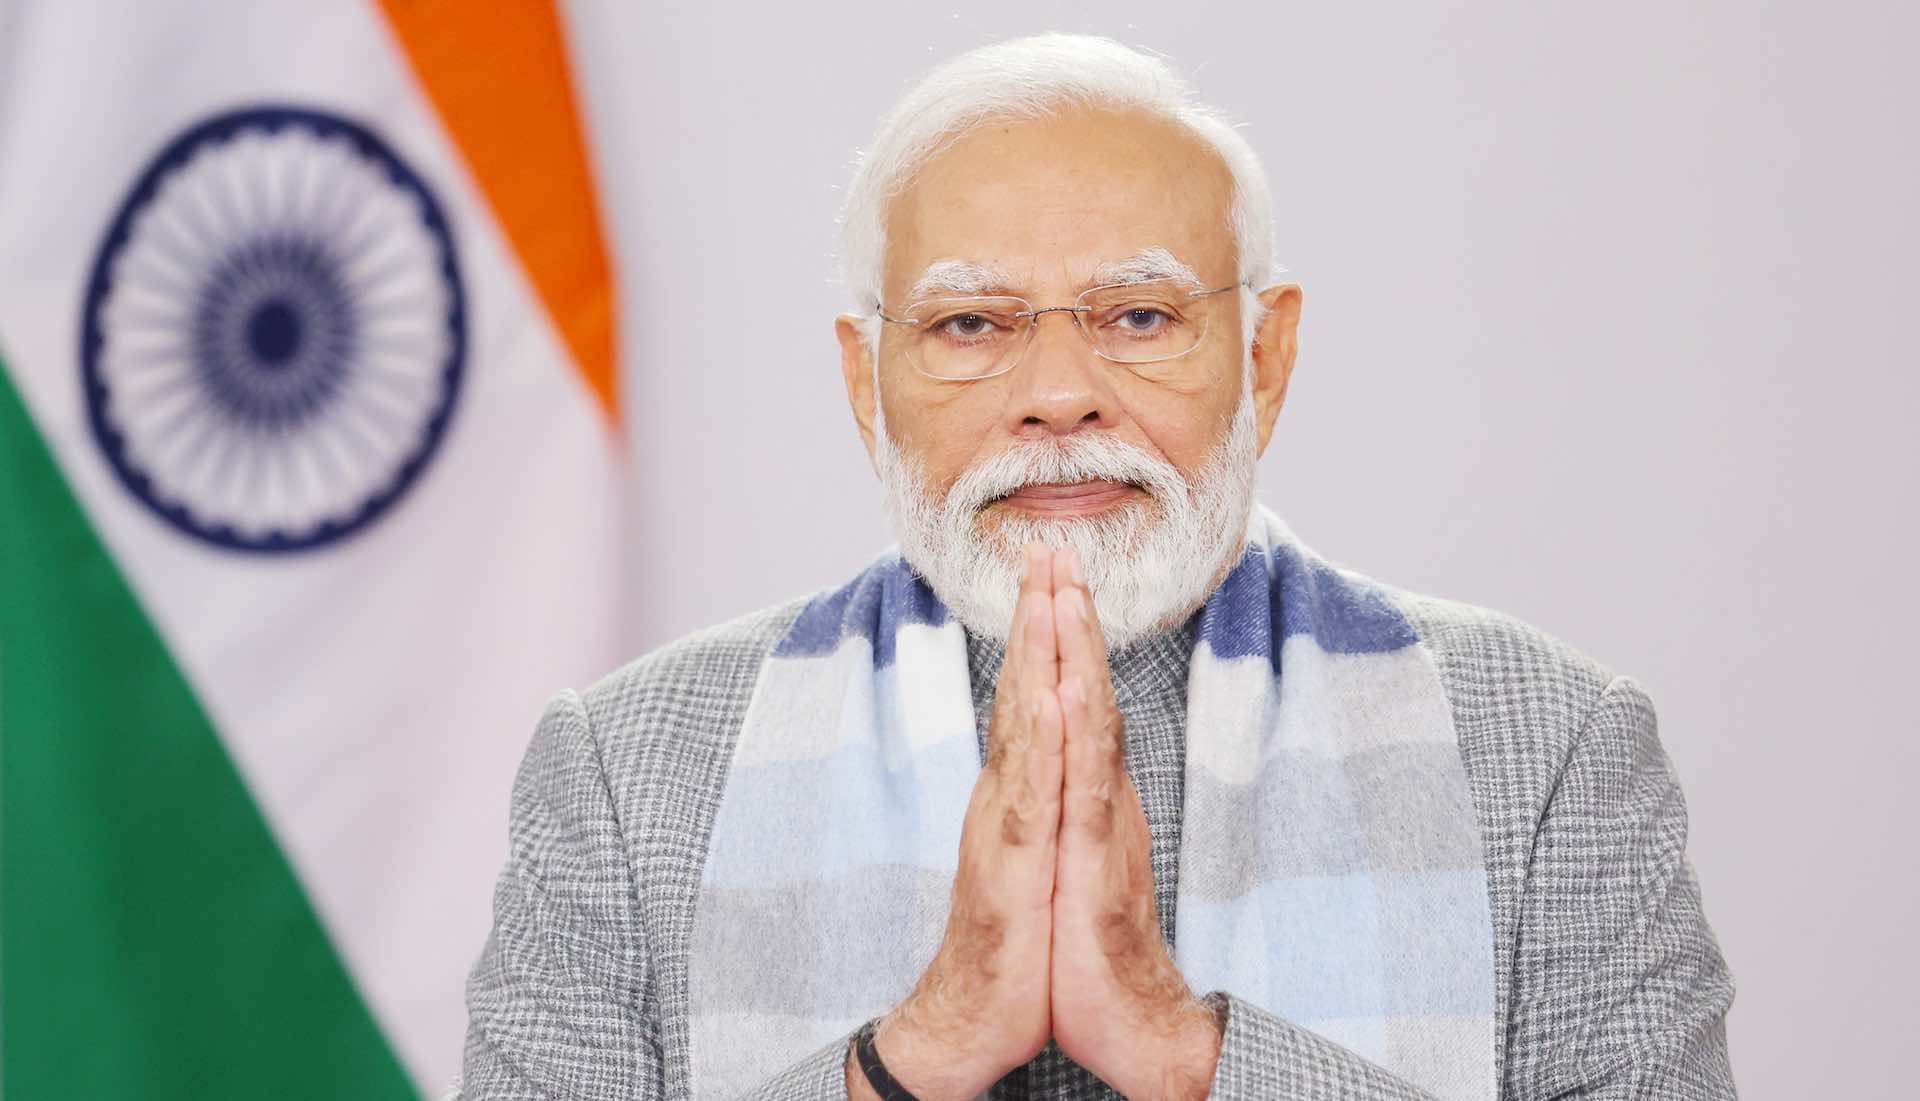 La victoire du Premier ministre Modi marque une nouvelle ère pour le programme de développement de l'Inde